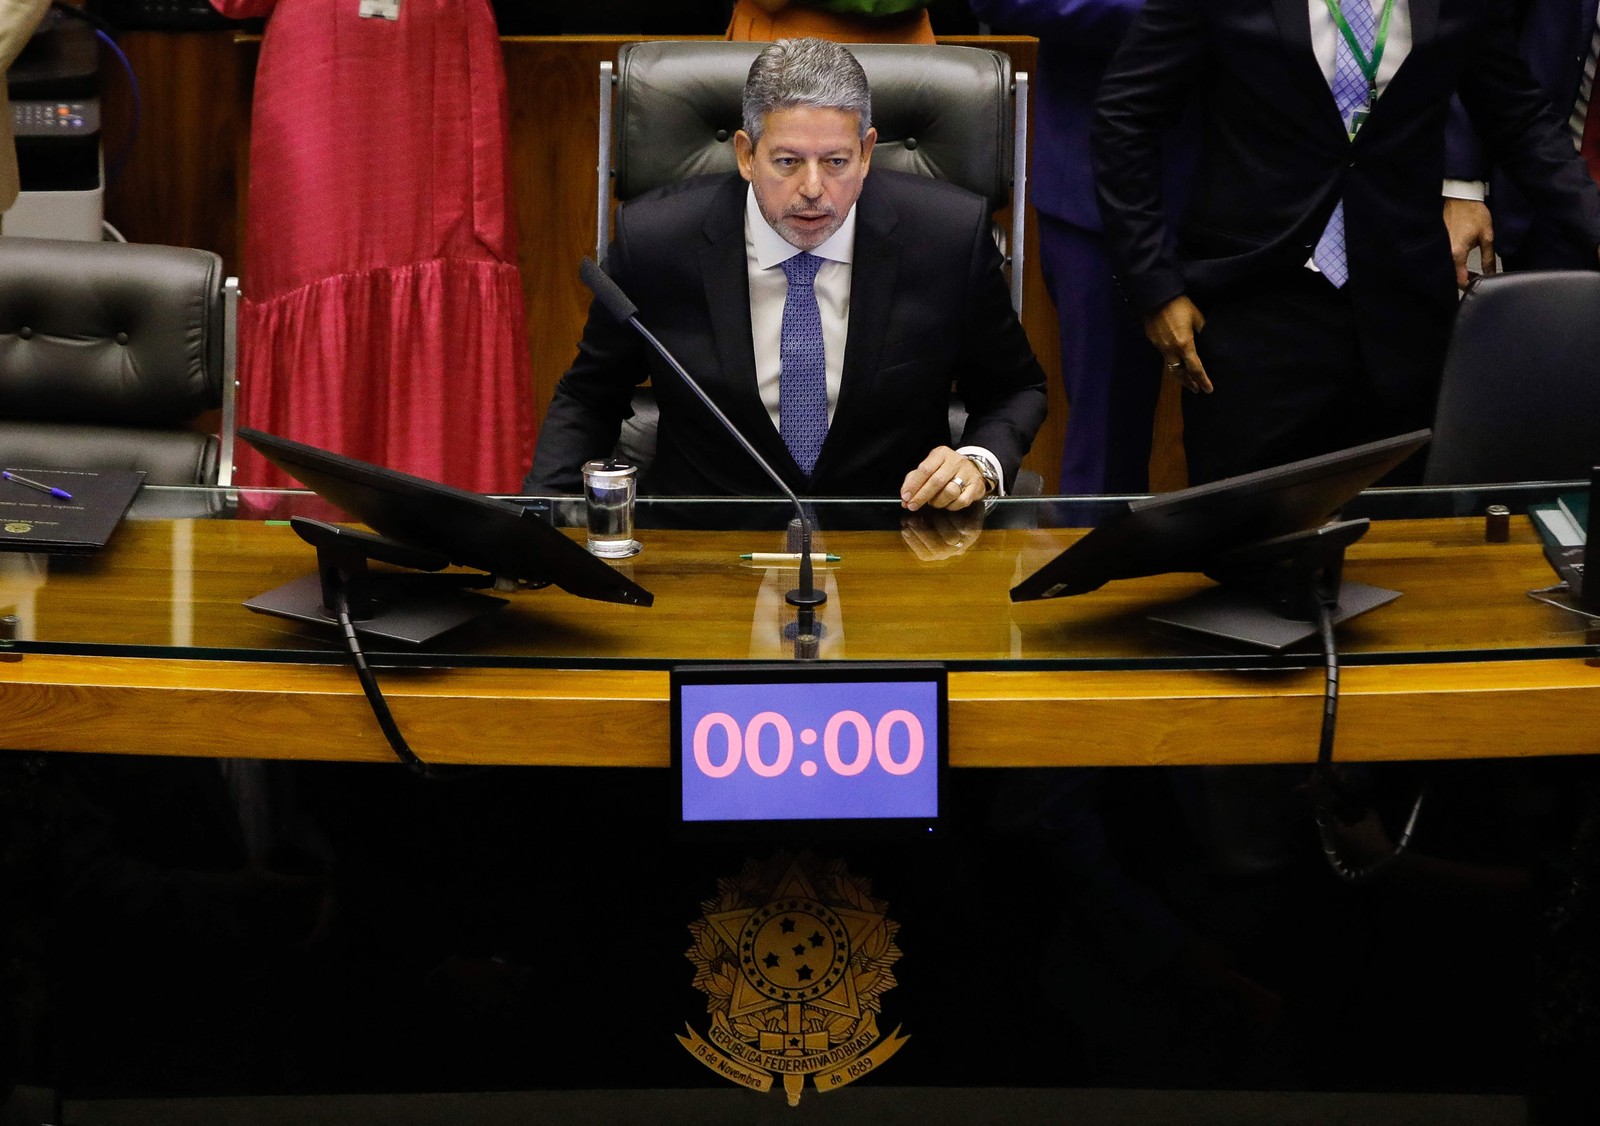 O presidente da Câmara dos Deputados, Arthur Lira, fala durante a cerimônia de posse dos novos deputados brasileiros no plenário da Câmara dos Deputados, em Brasília — Foto: Sergio Lima / AFP